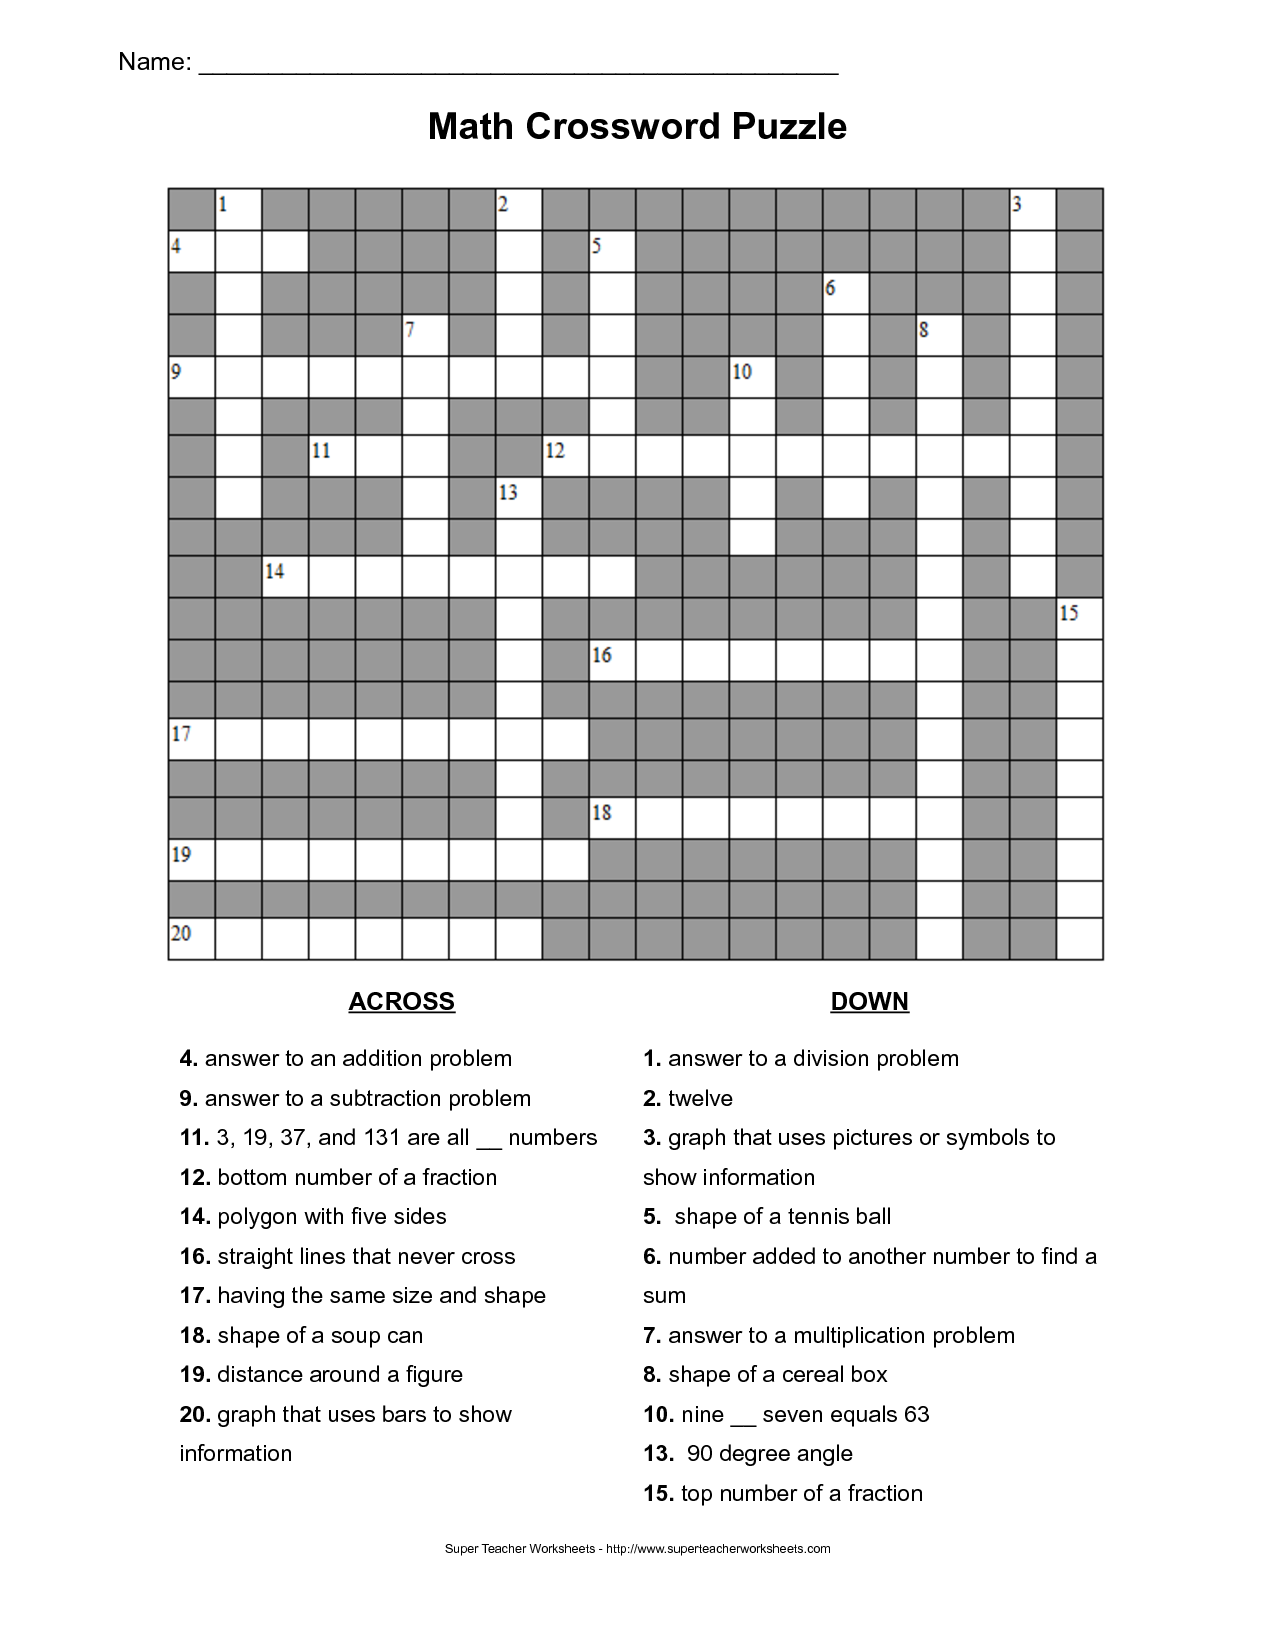 Math Crossword Puzzles - Medium Puzzle Five - Free Puzzles